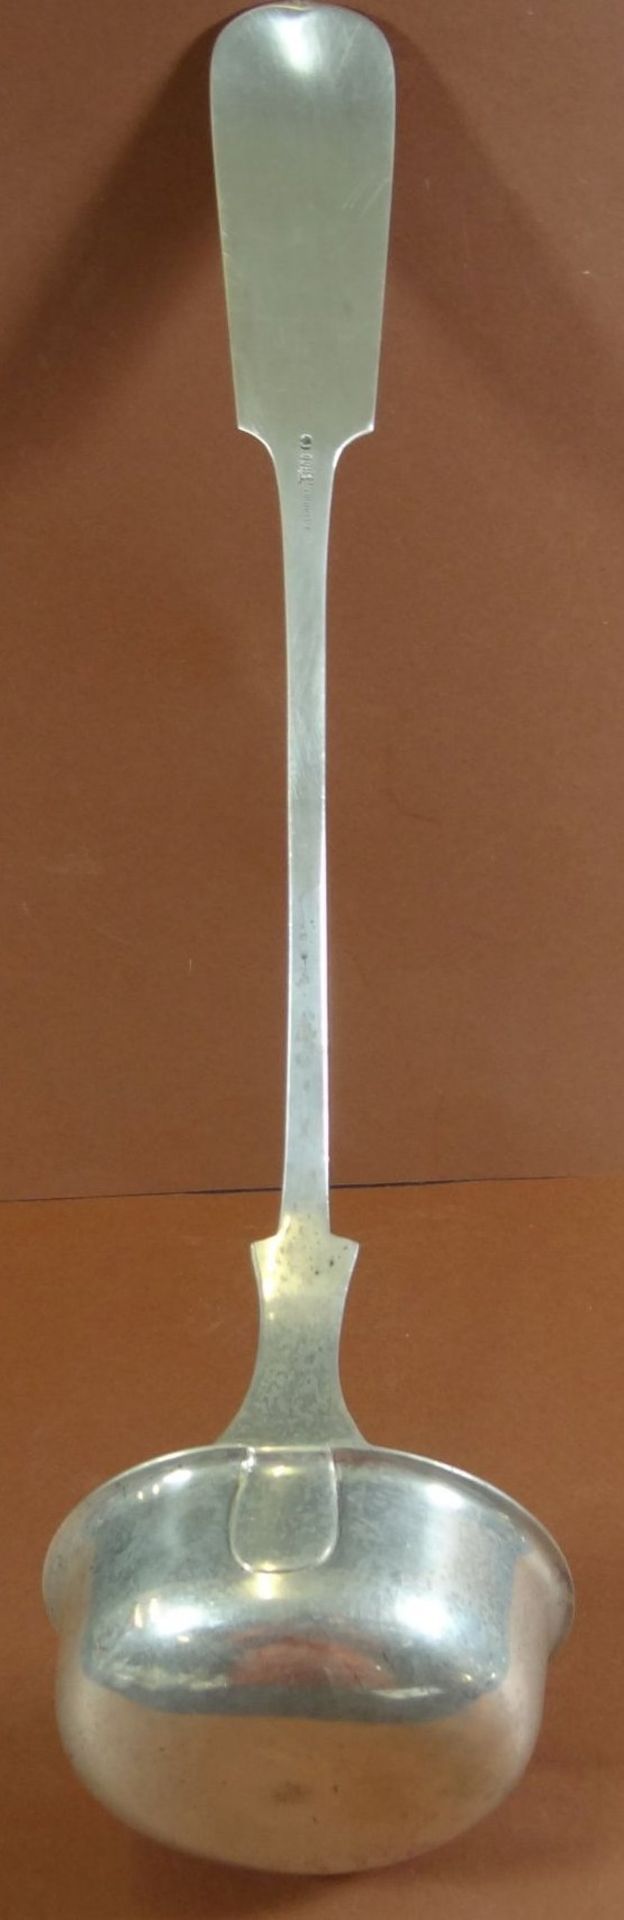 schwere Silberkelle-800-, Spatenform, L-33 cm, 196 gramm, Monogramm EB - Image 4 of 5